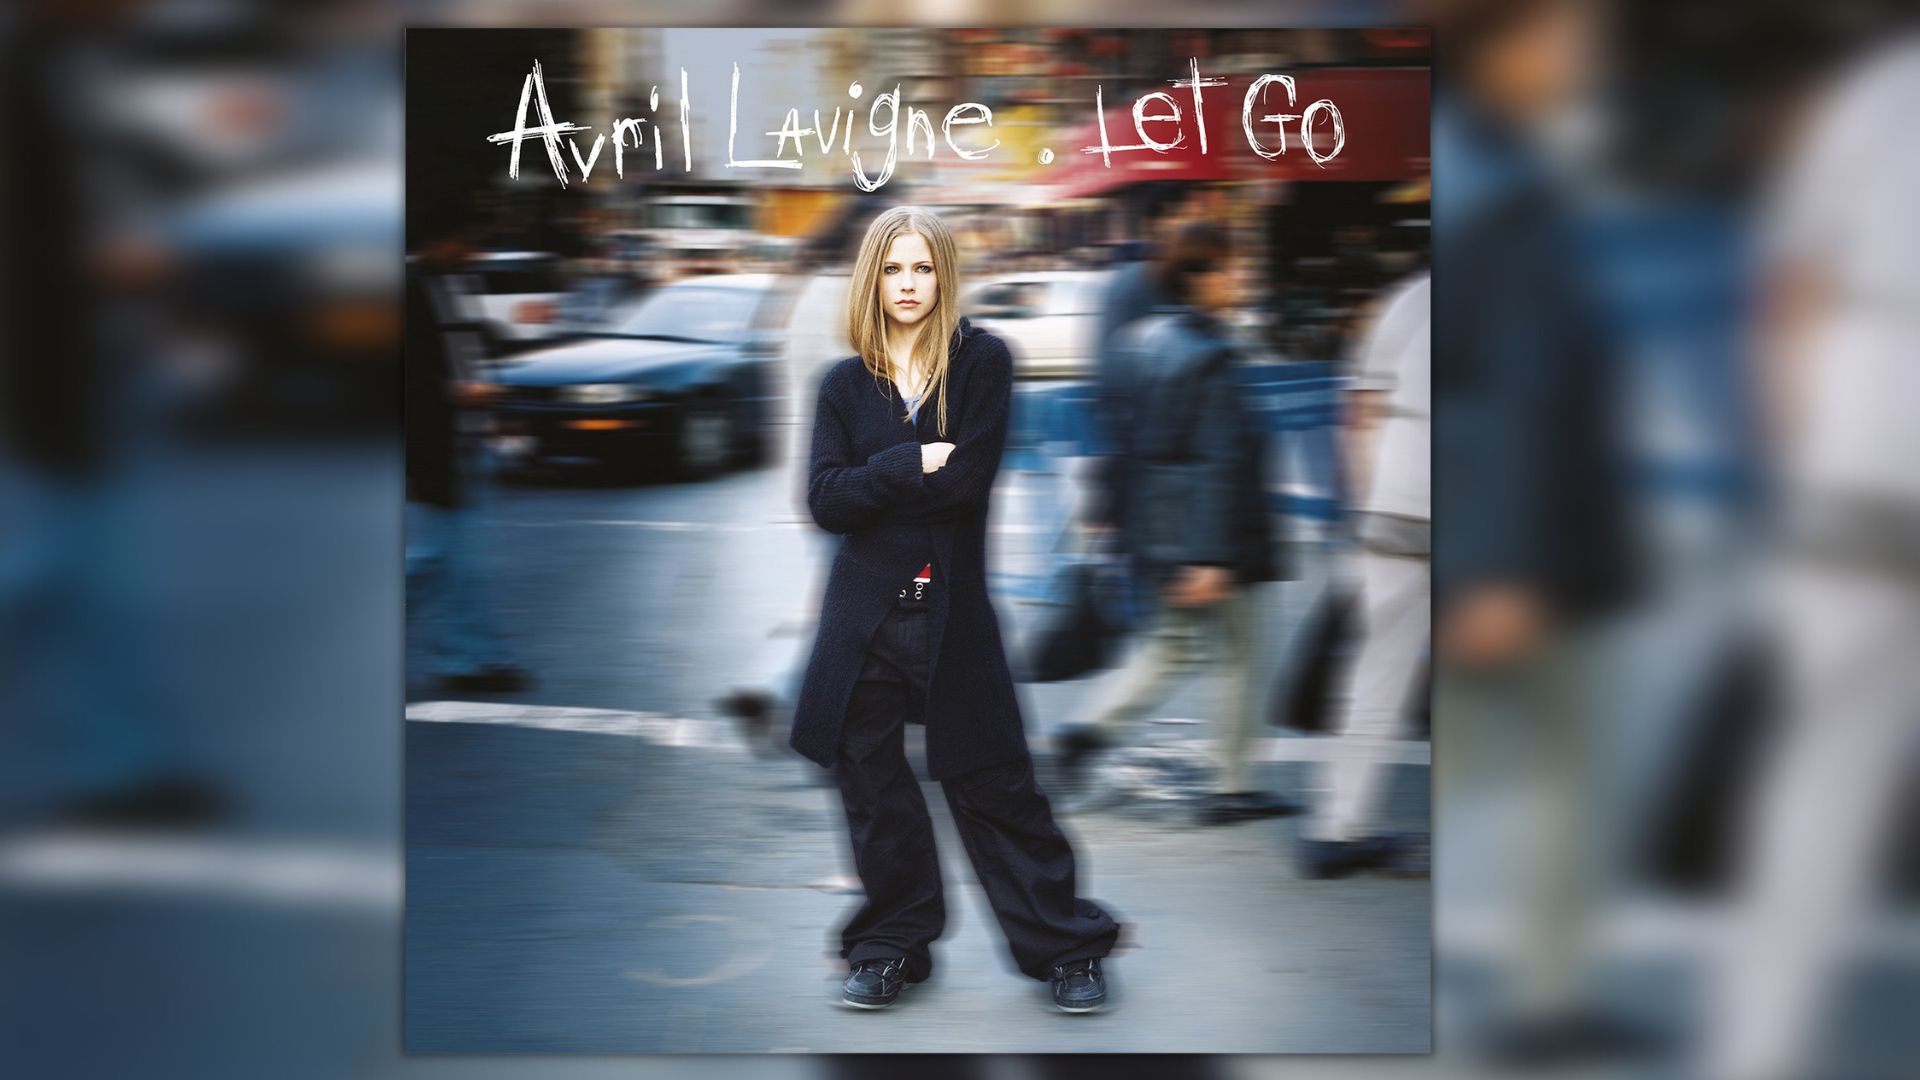 20 ans après, Avril Lavrigne recrée « Let Go » et ça nous met un coup